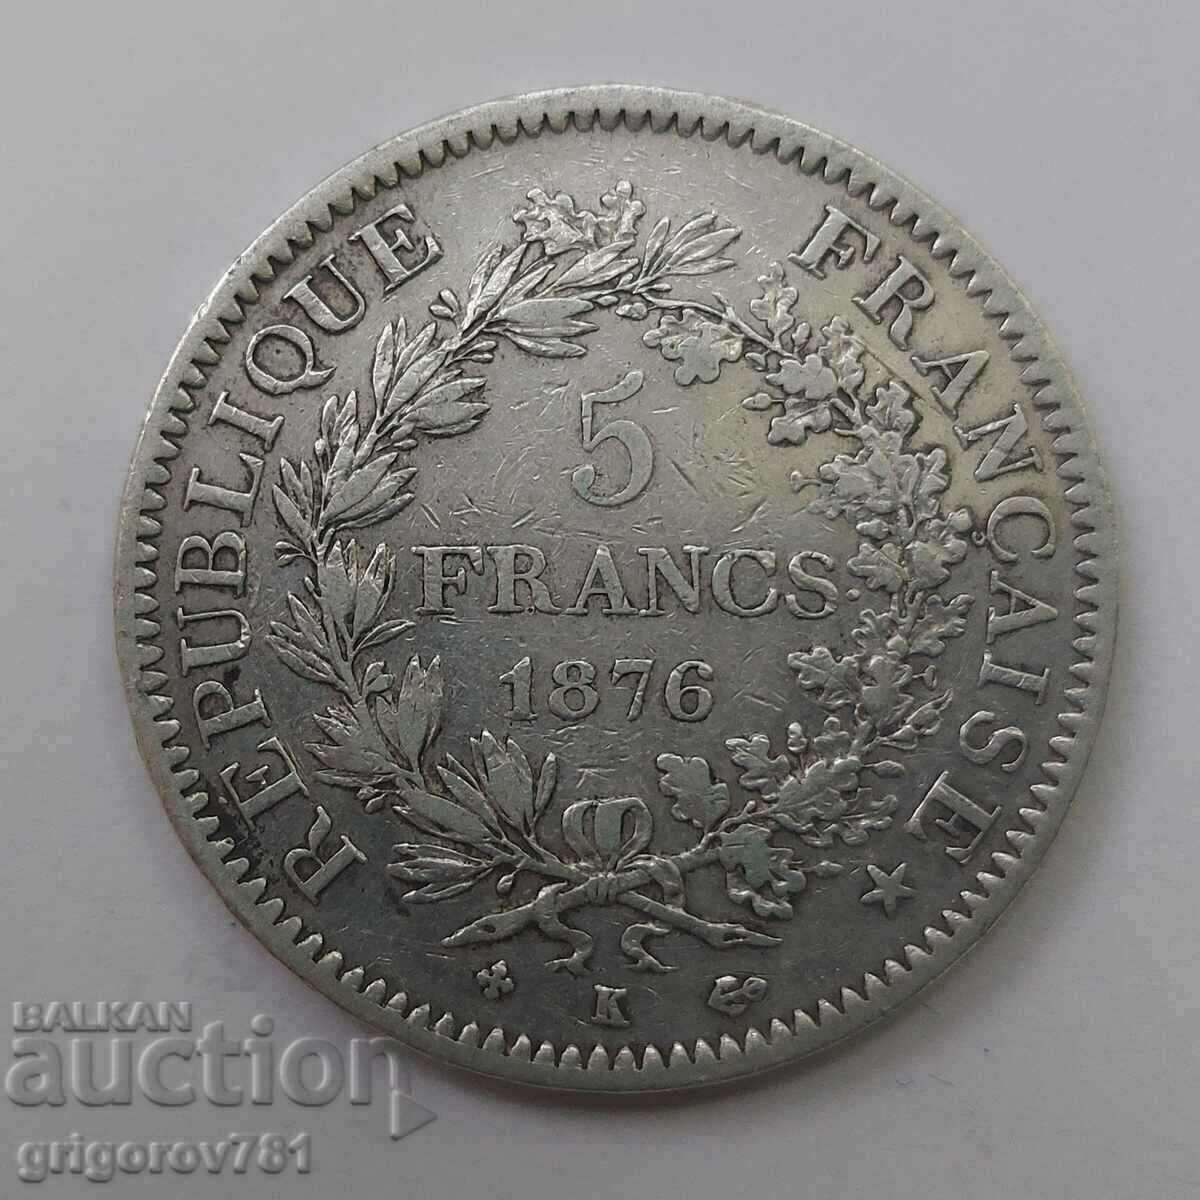 5 Franci Argint Franta 1876 K - Moneda de argint #72